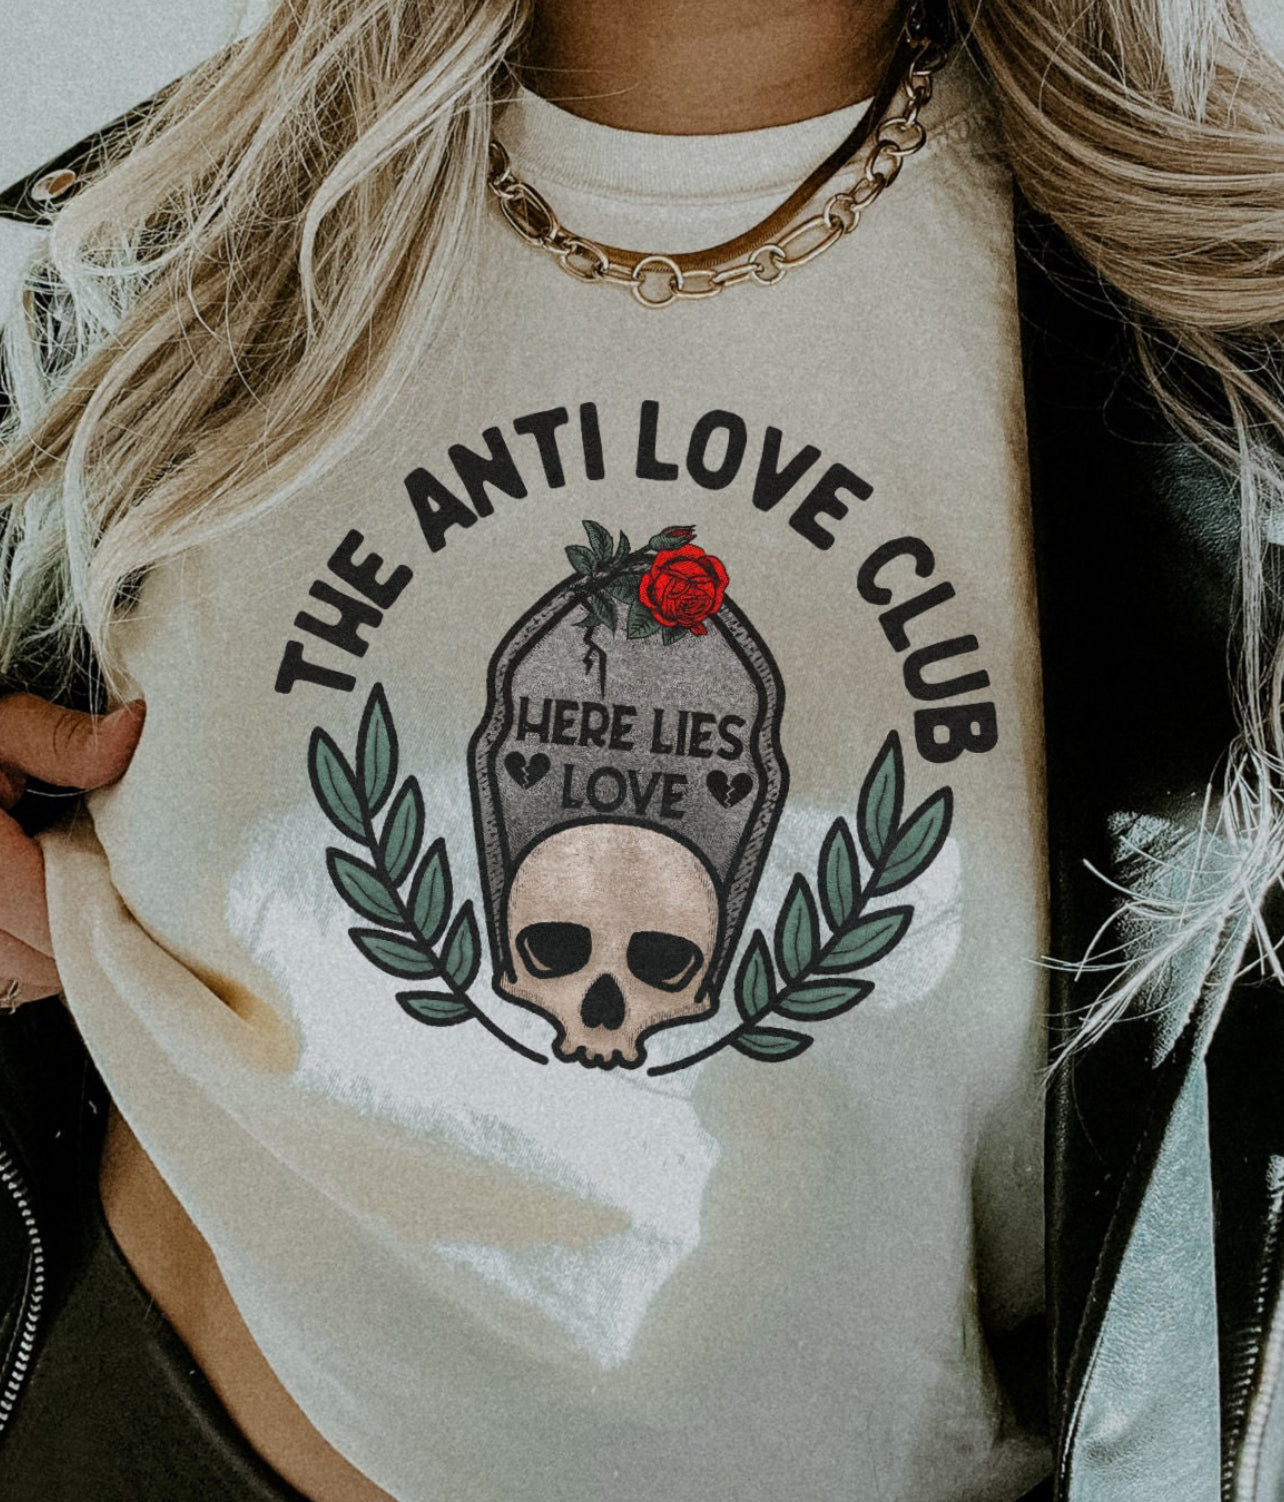 The anti love club